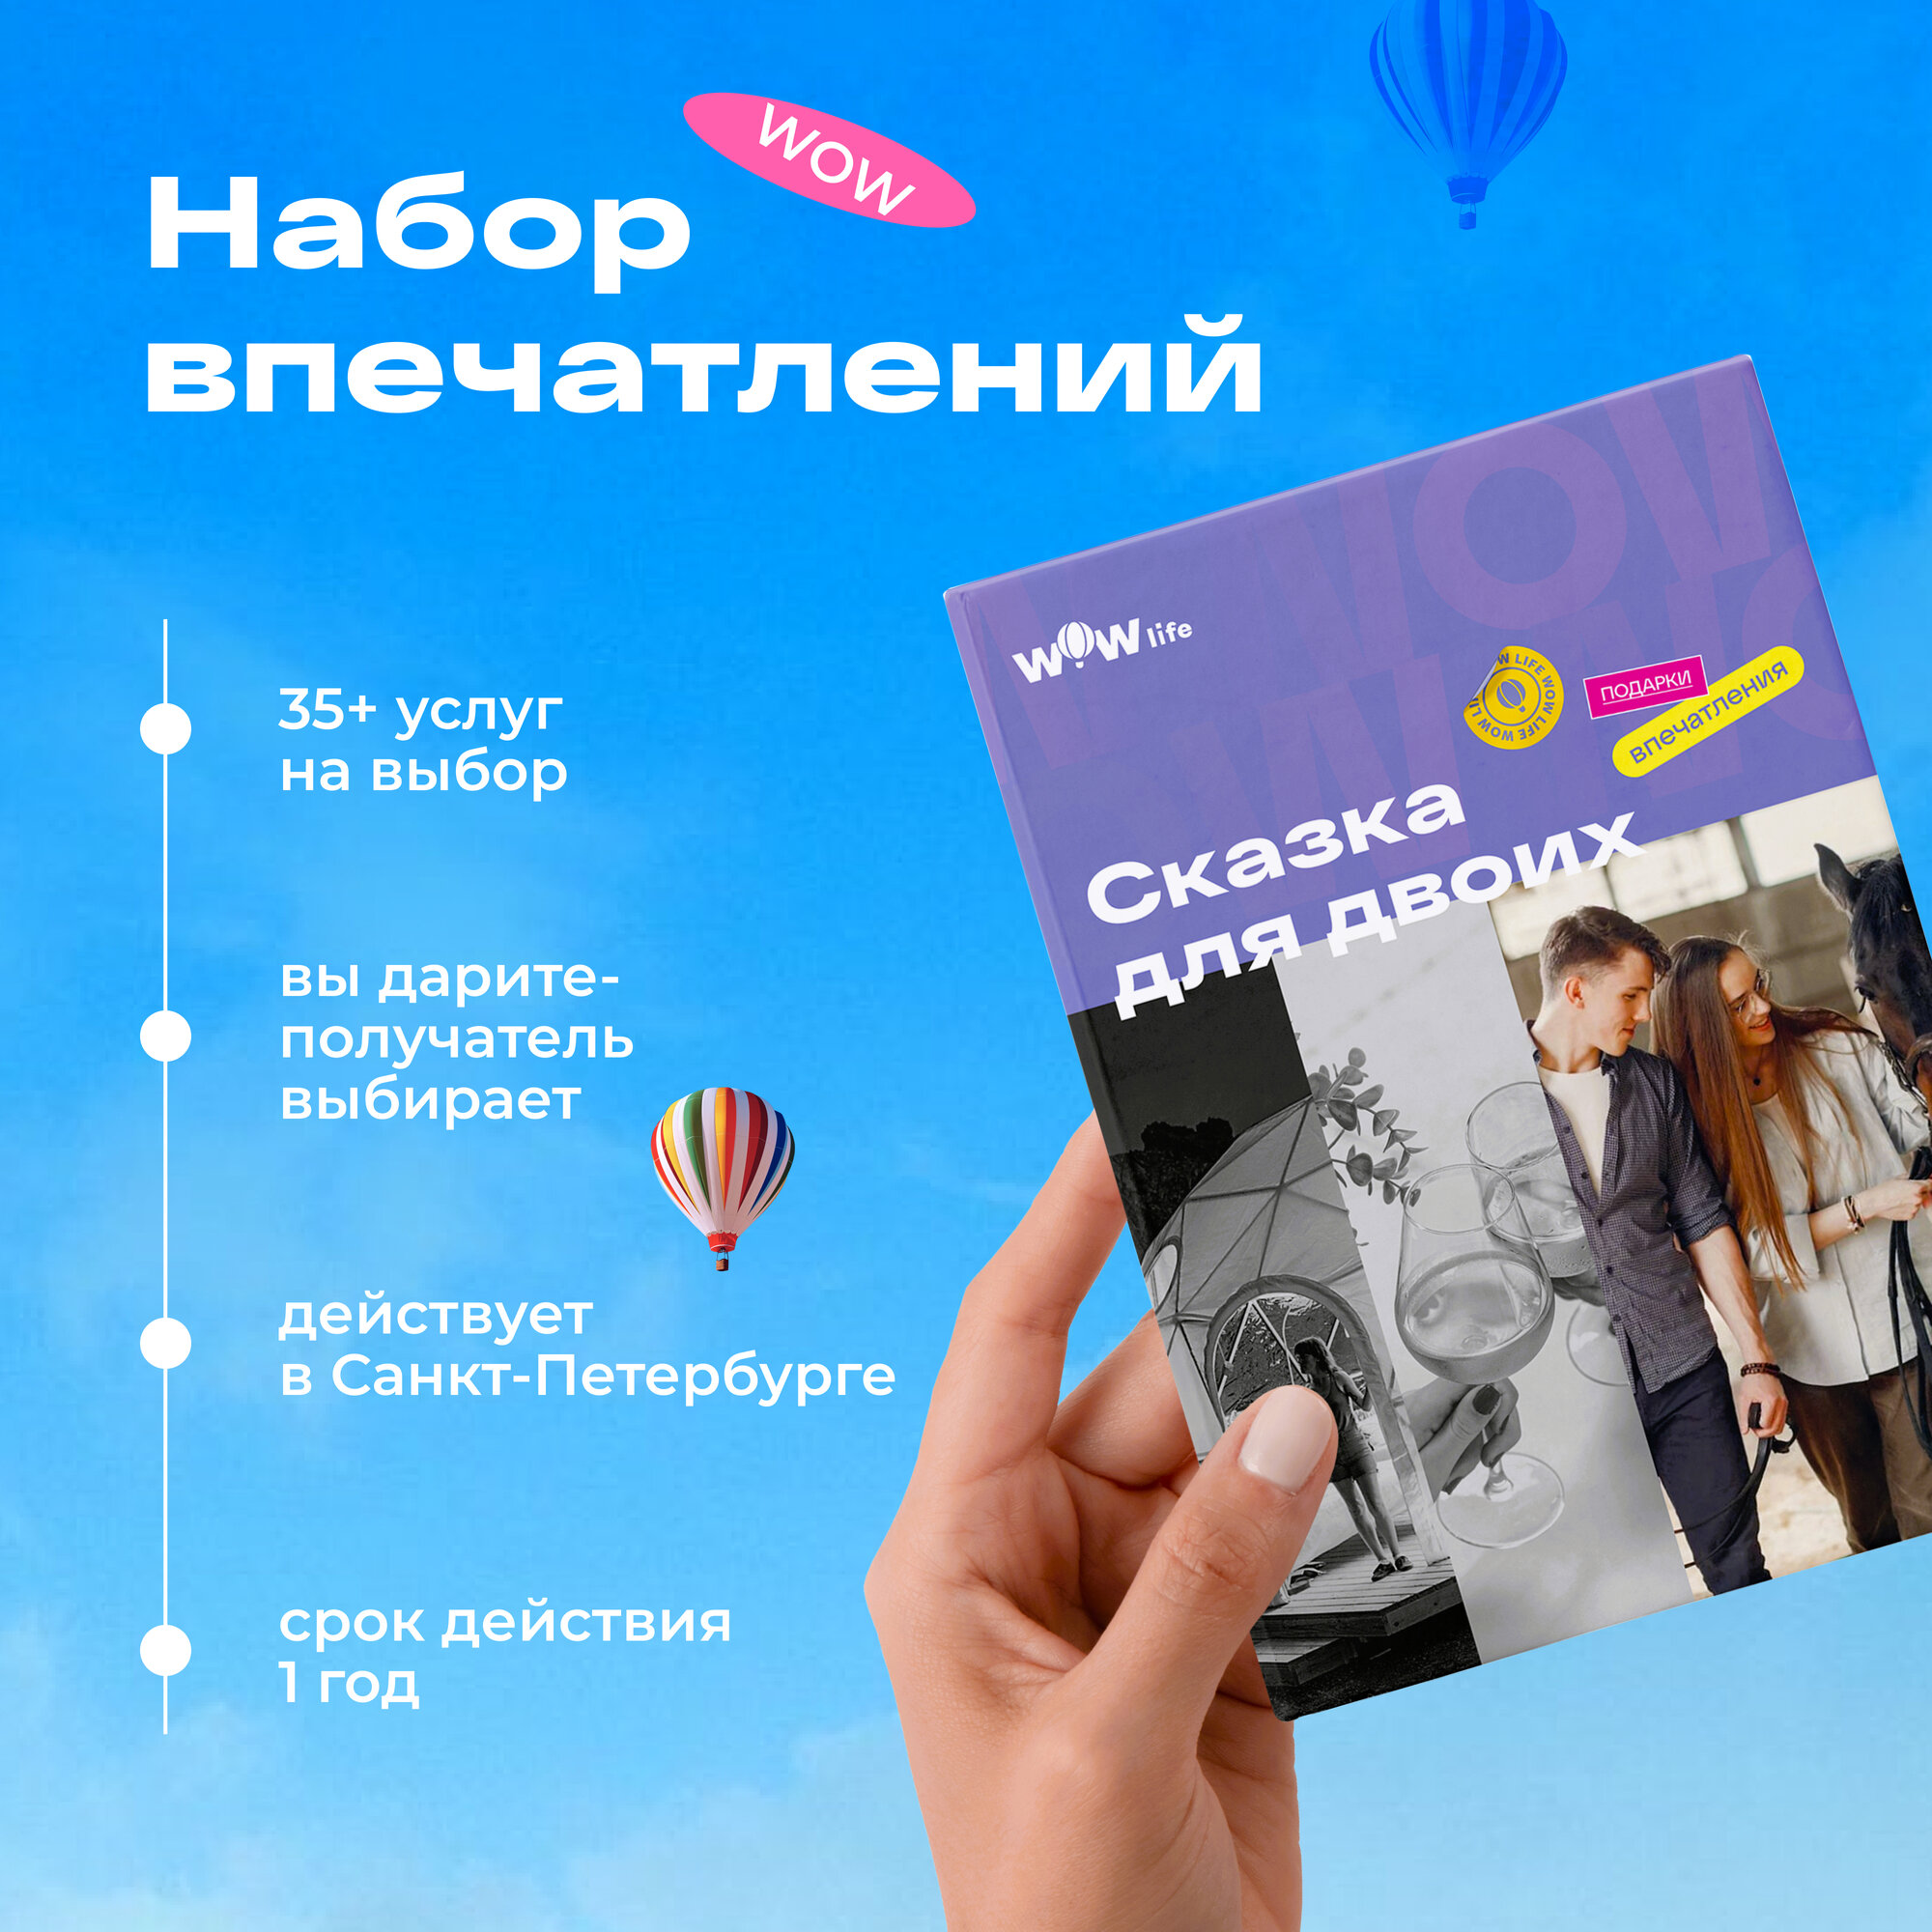 Подарочный сертификат WOWlife "Сказка для двоих" - набор из впечатлений на выбор, Санкт-Петербург